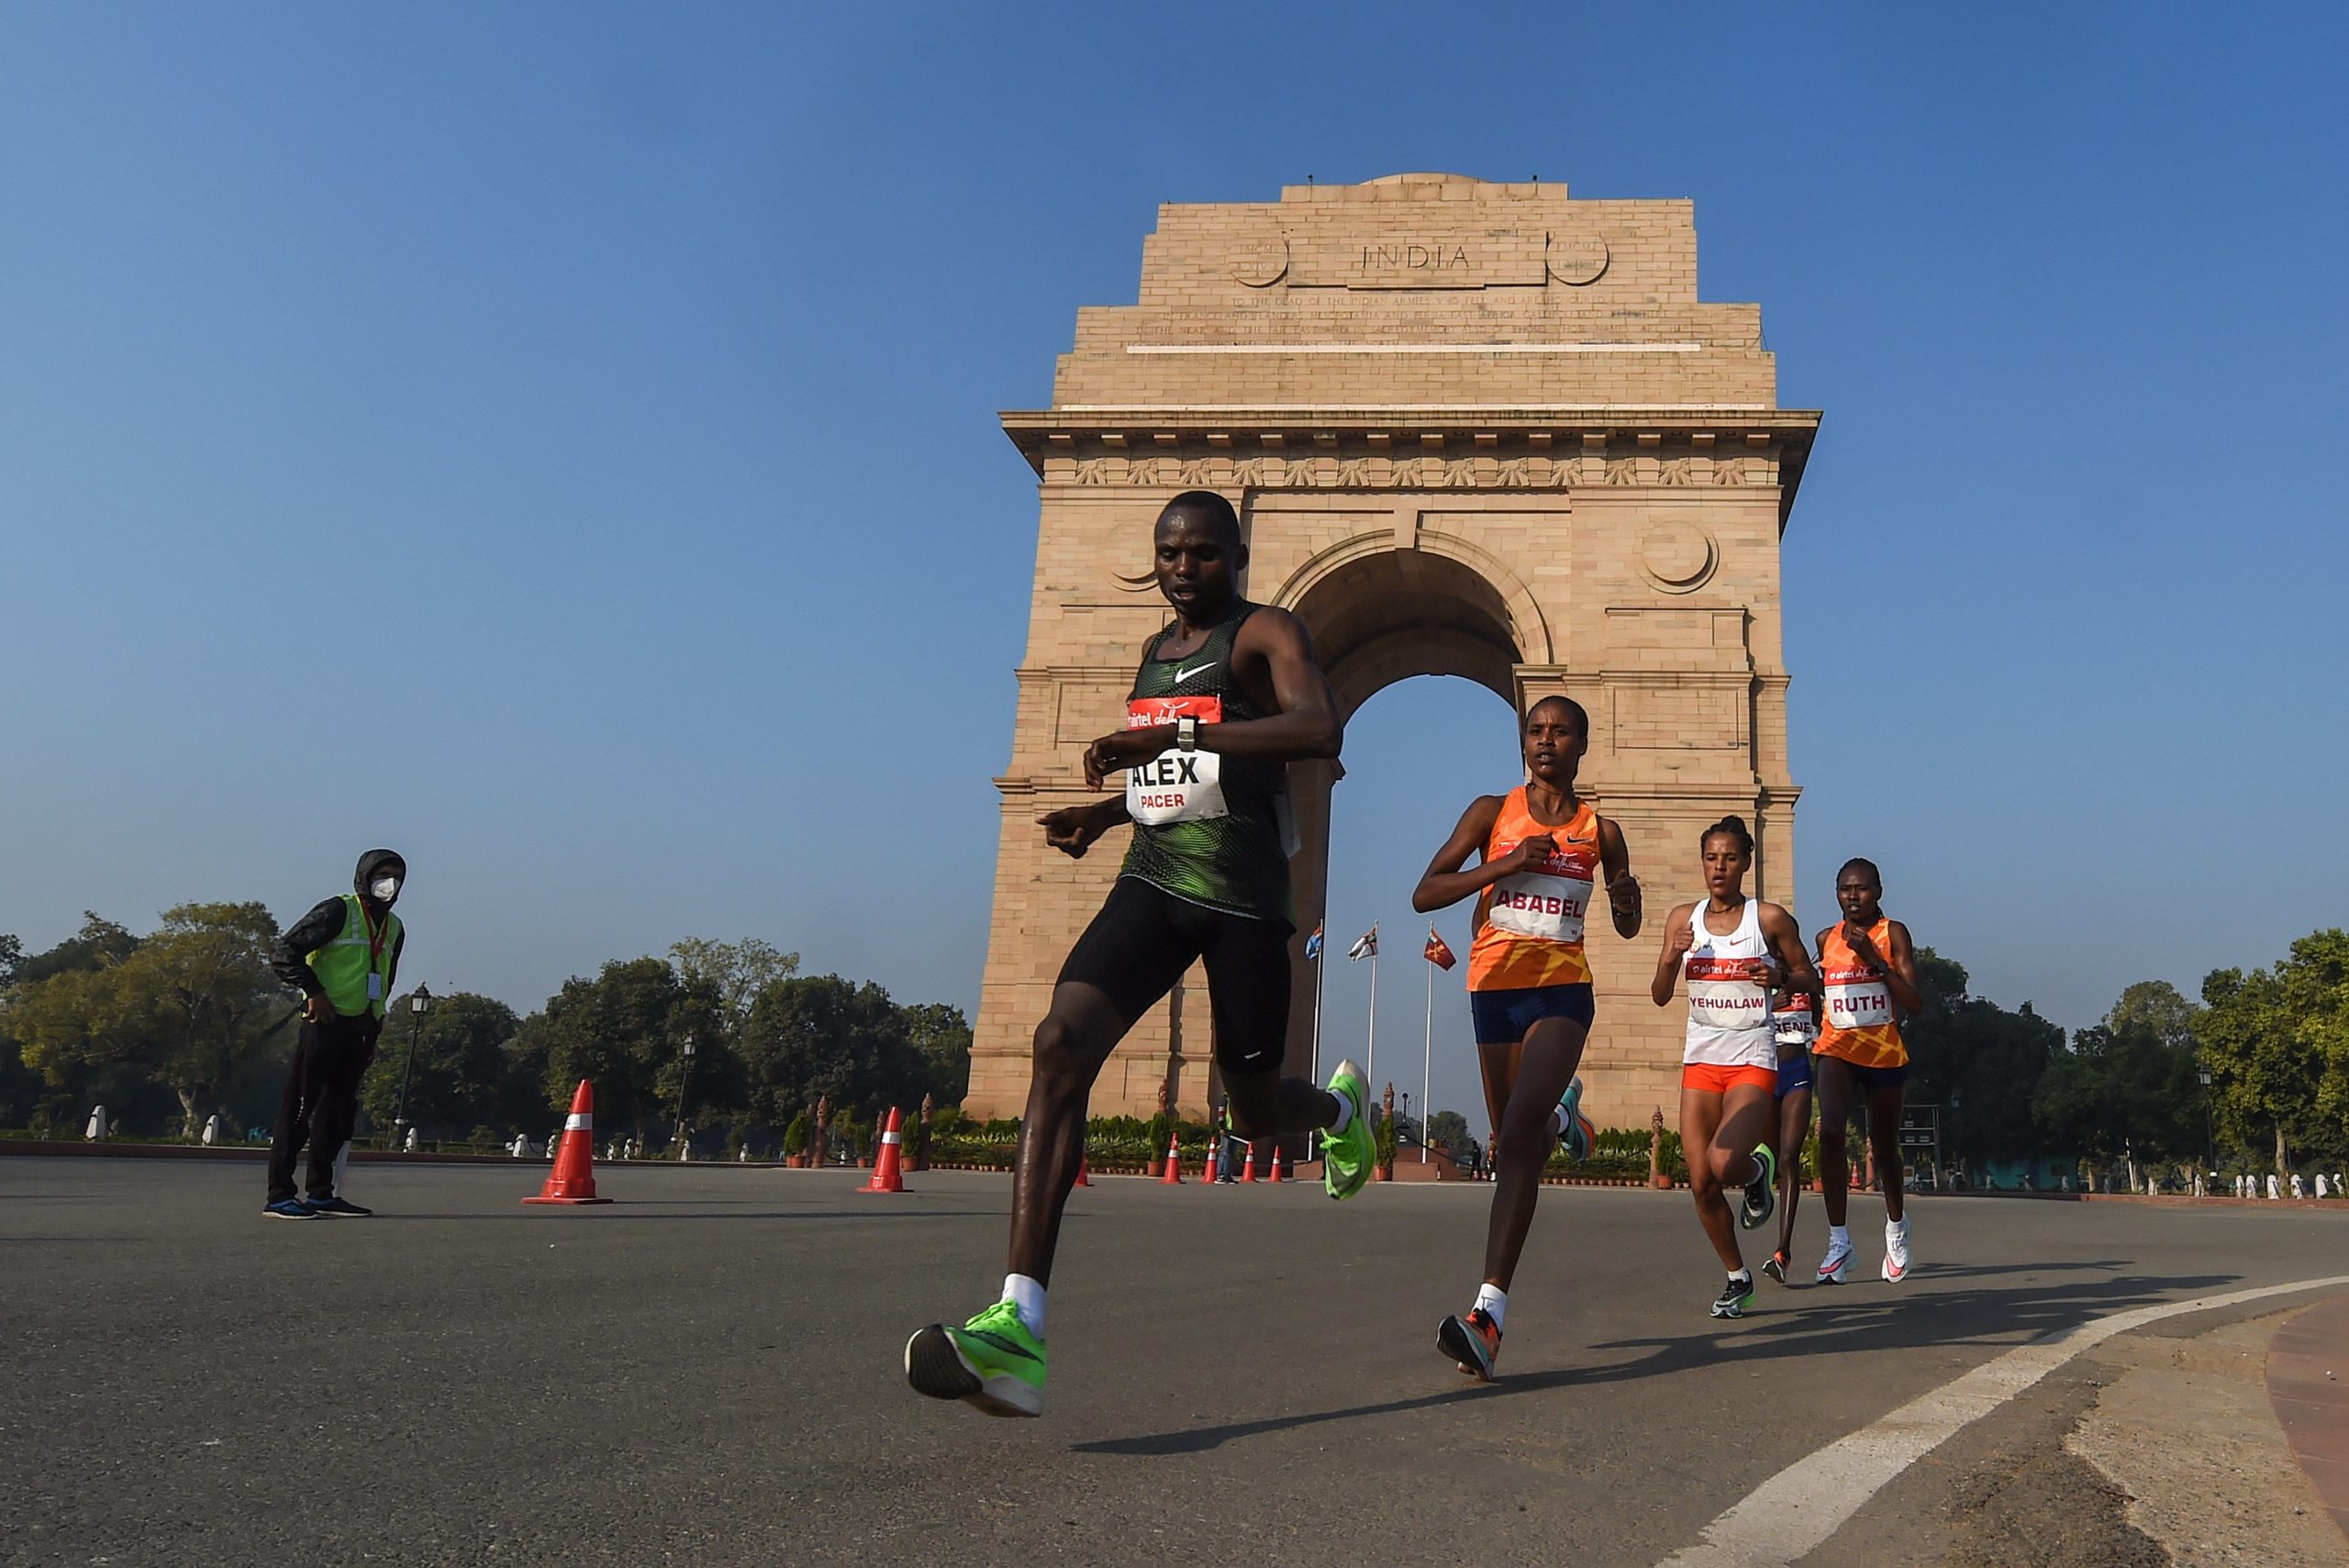 Top runners face COVID-19 pandemic, air pollution in Delhi half marathon